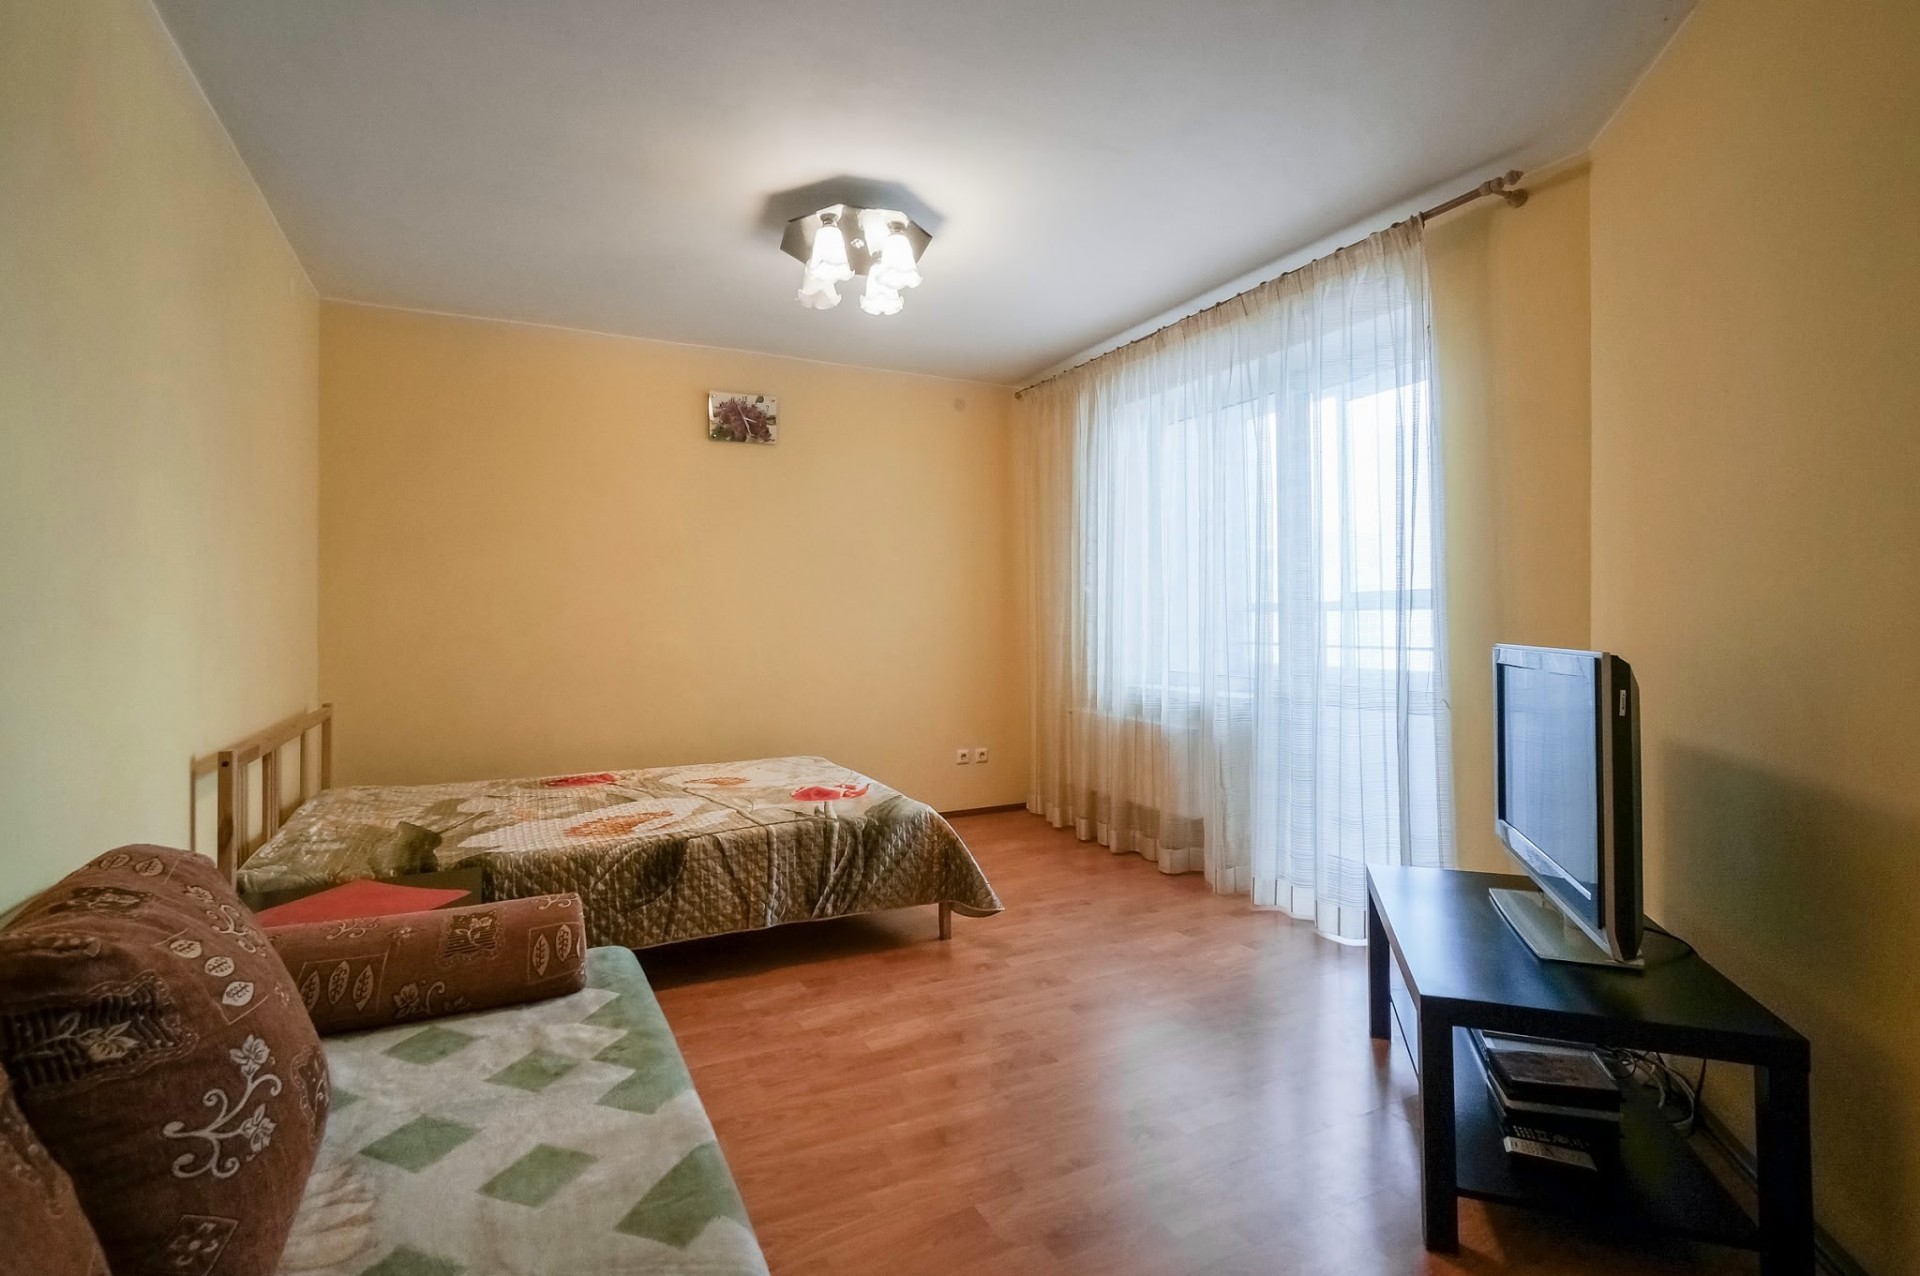 Аренда посуточно квартиры Смоленская д 10. 1 комнатная квартира чкаловский